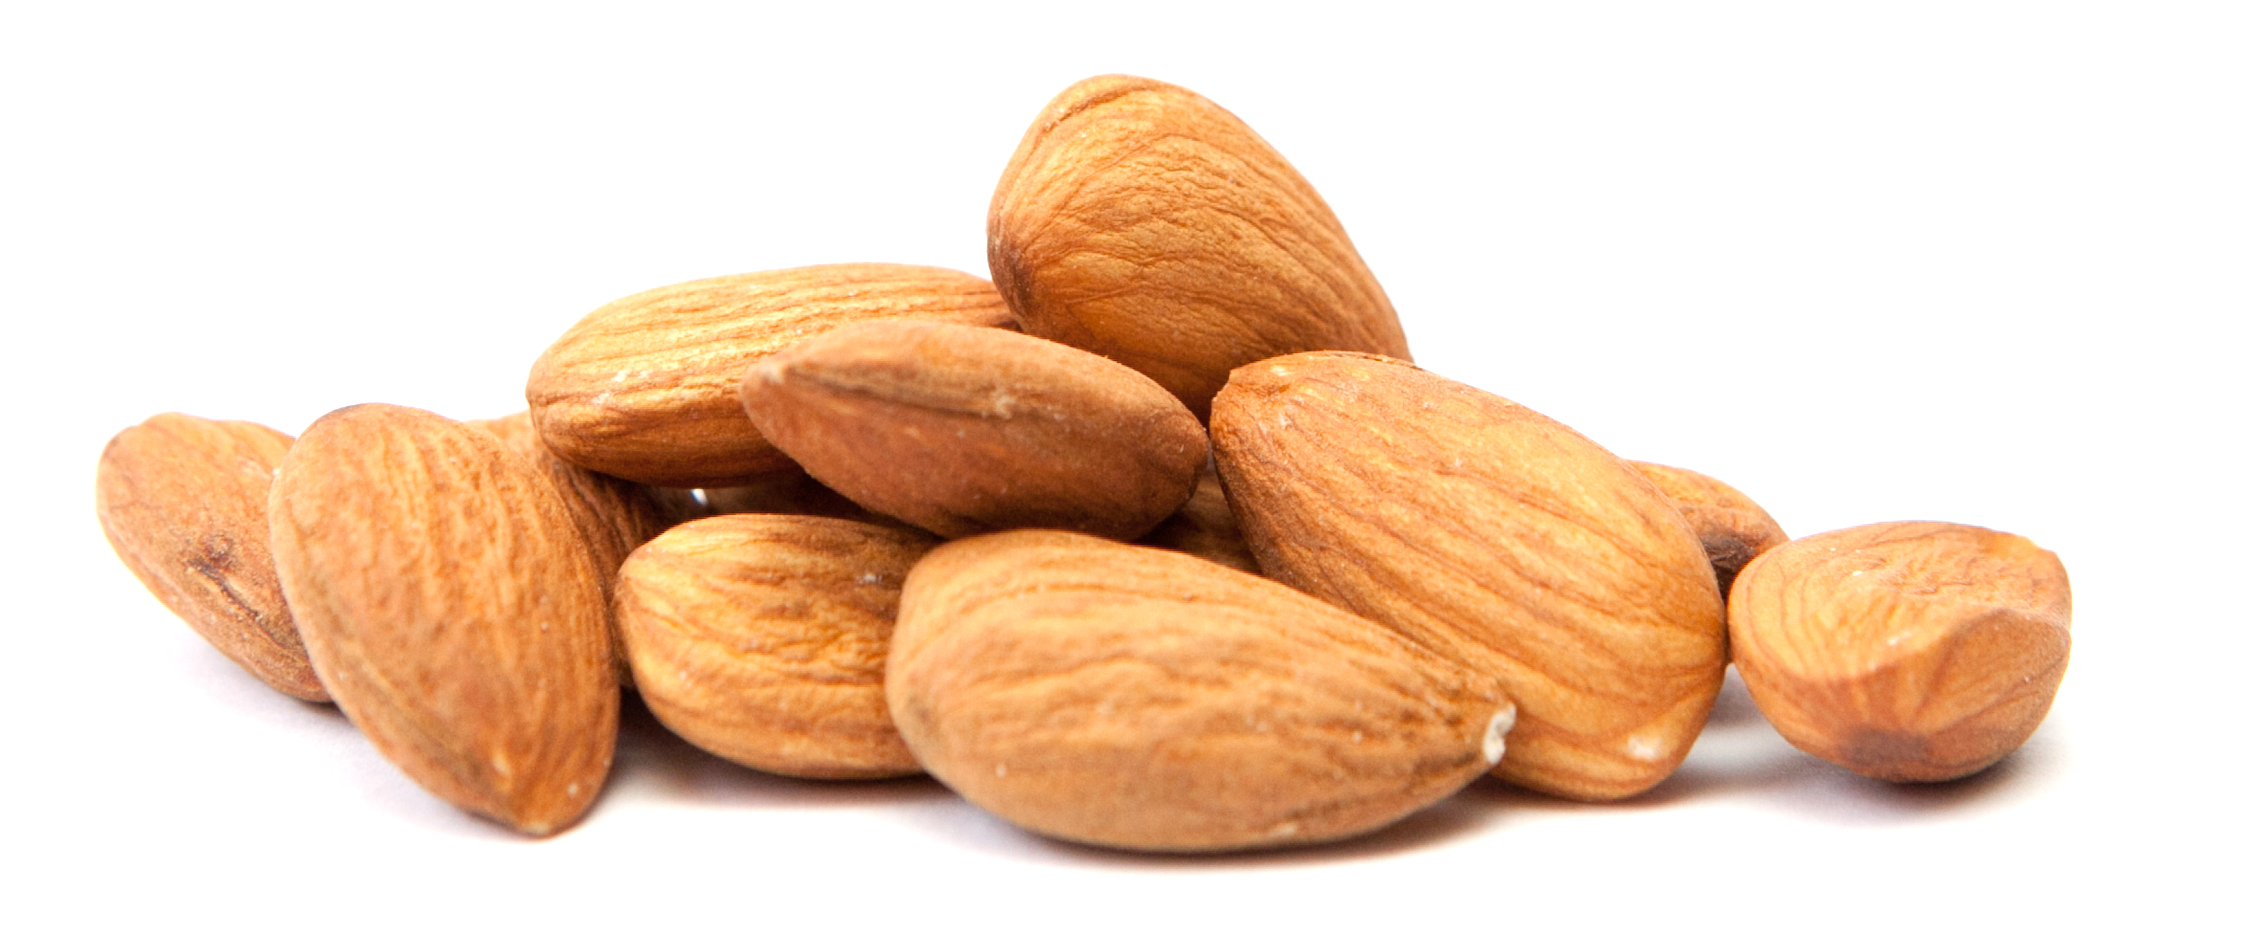 nut-free-grain-free-diet.png.png